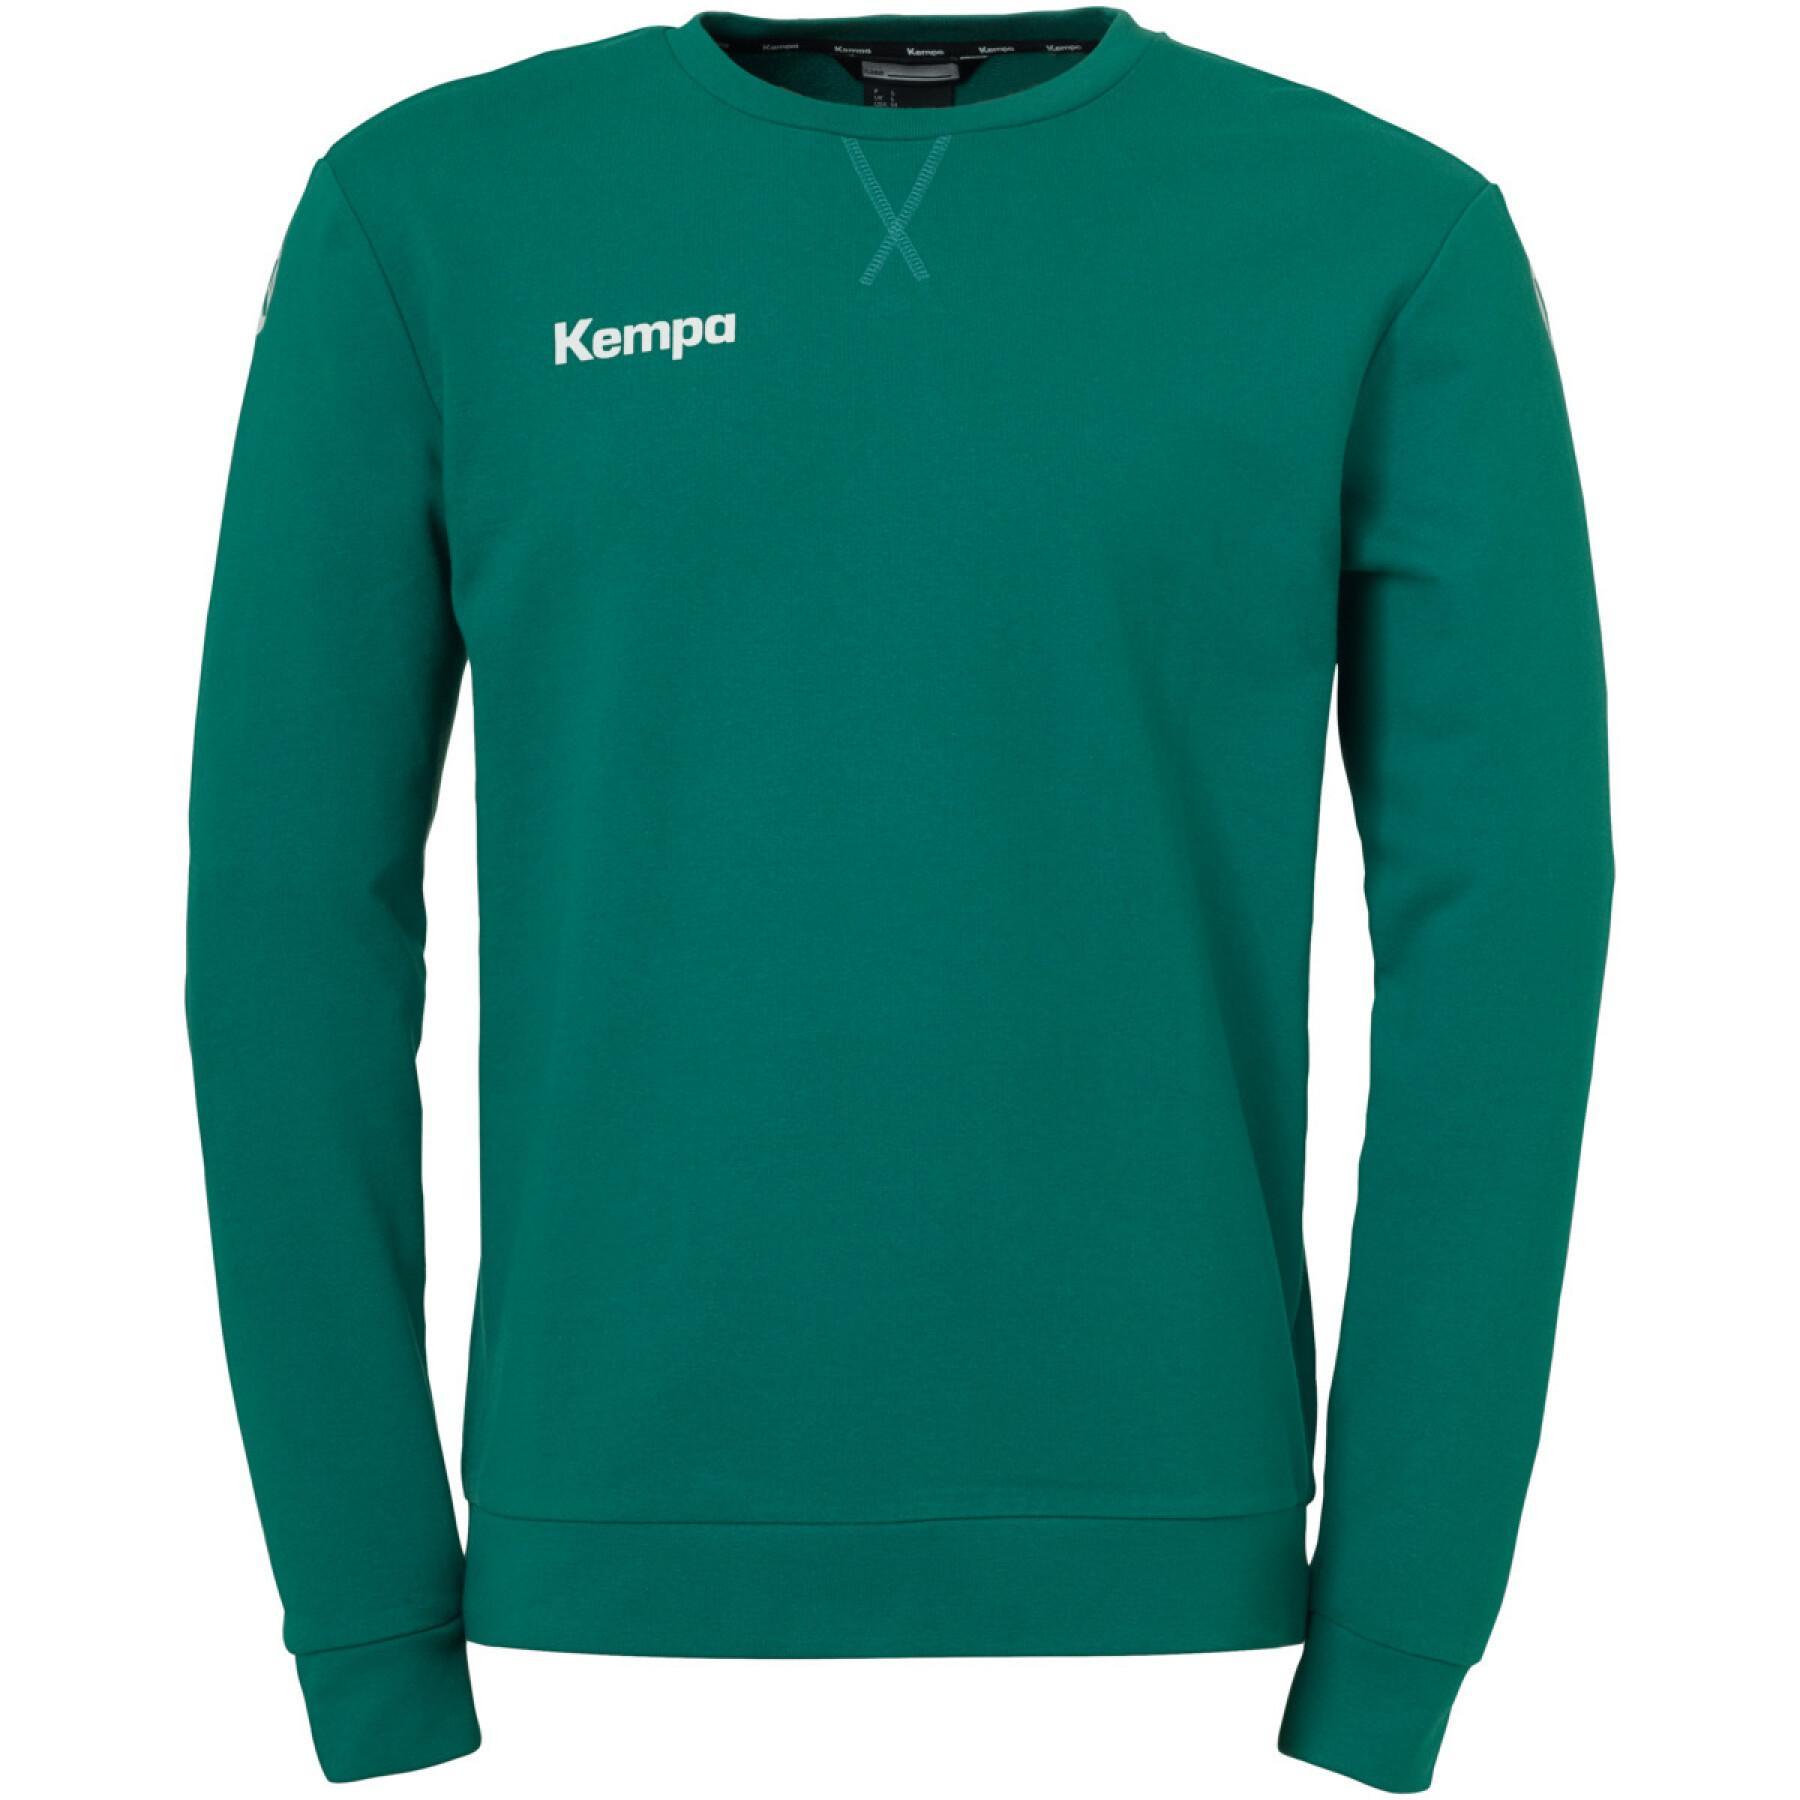 Children's training sweater Kempa